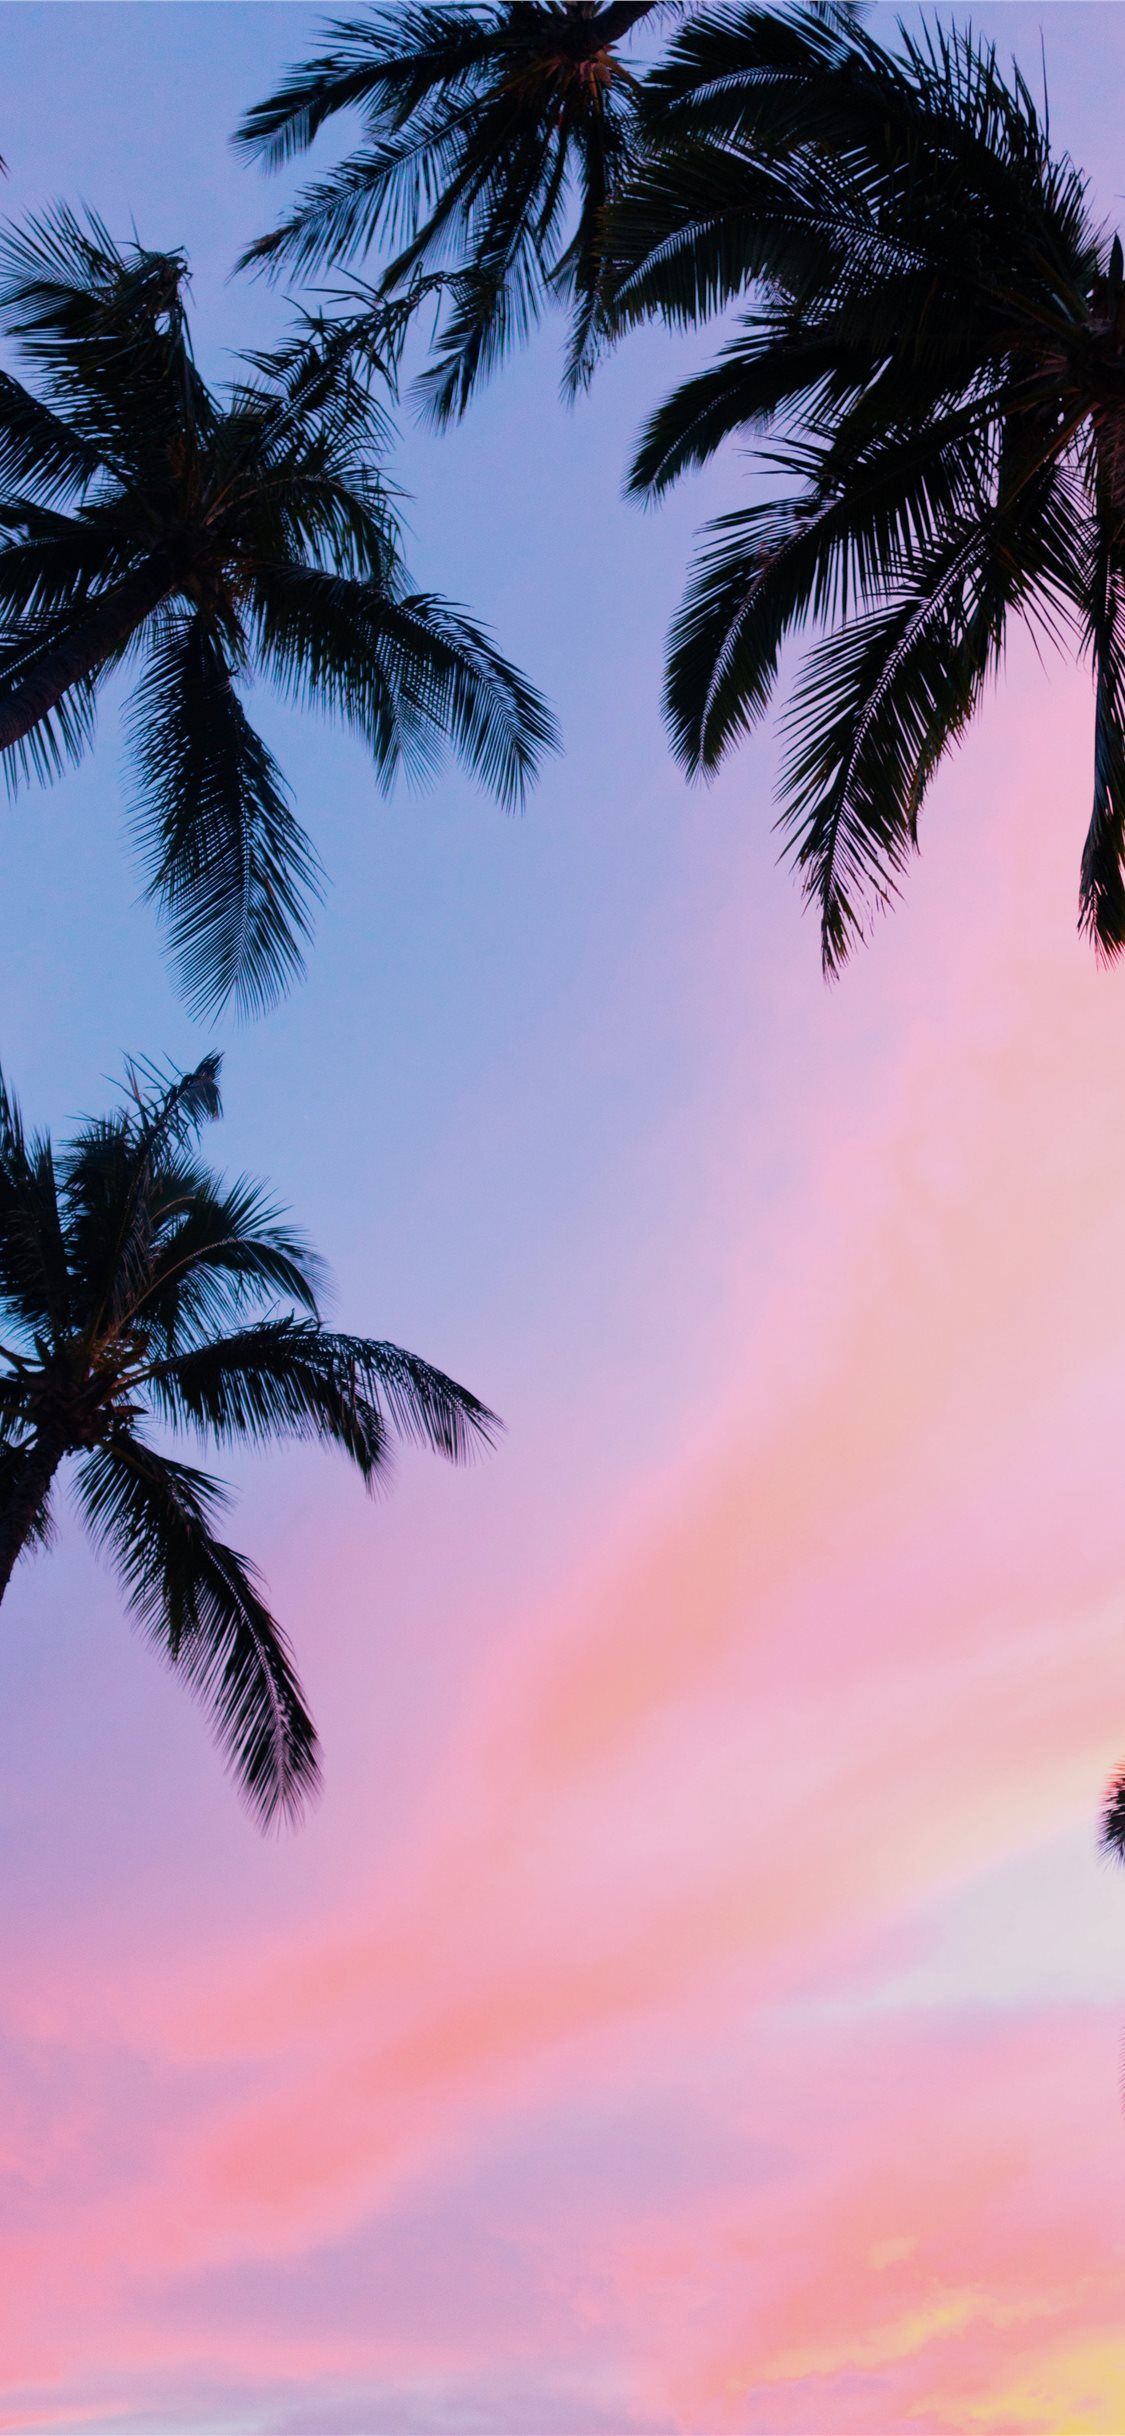 Best Palm tree iPhone X Wallpaper HD [2020]